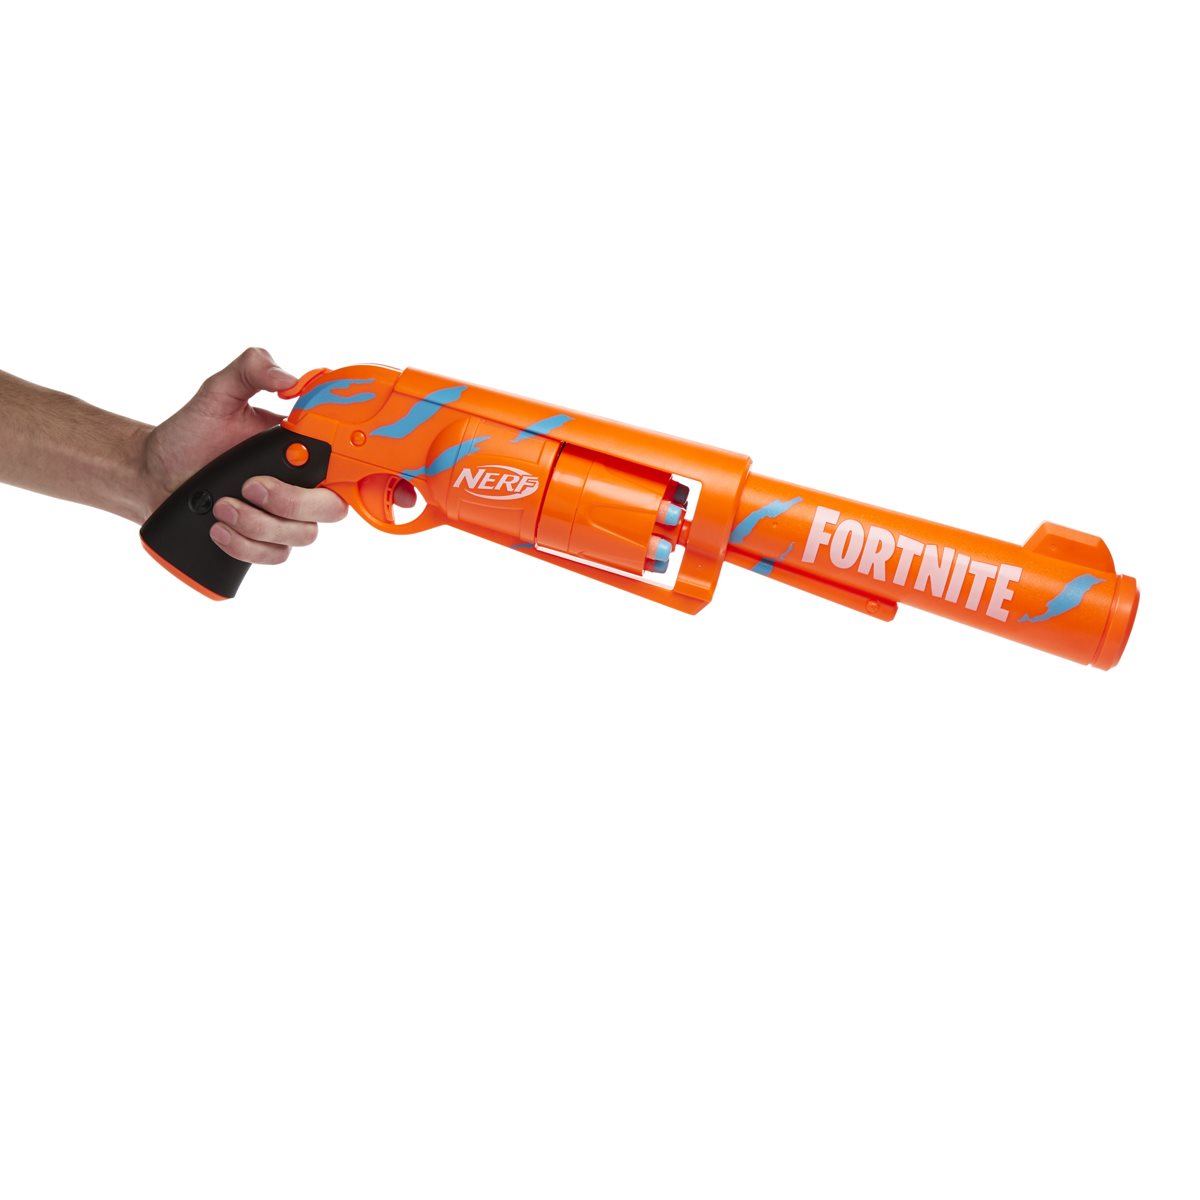 Nerf Fortnite 6-SH Dart Blaster, 1 ct - Fred Meyer